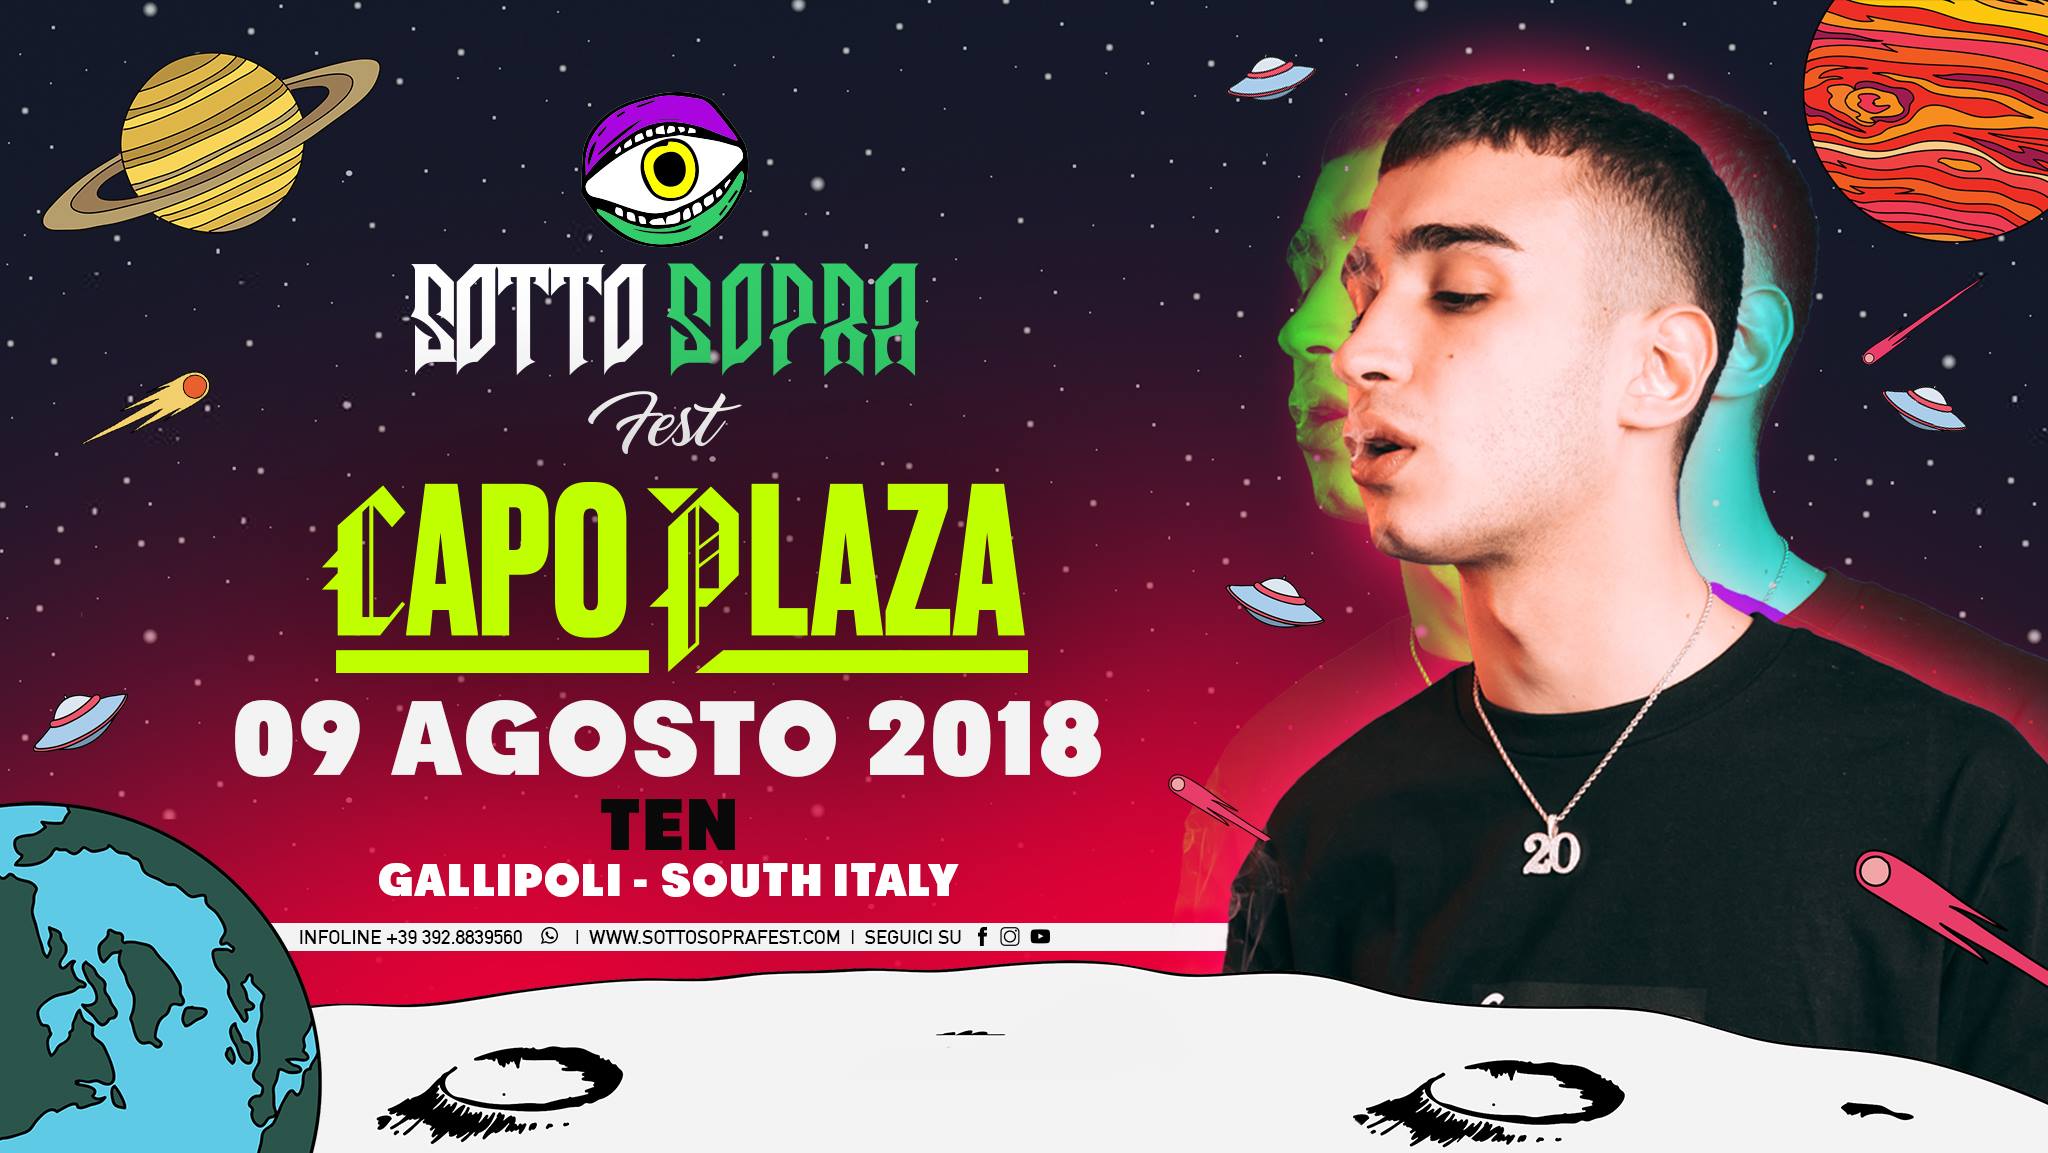 Capo Plaza Sottosopra Fest